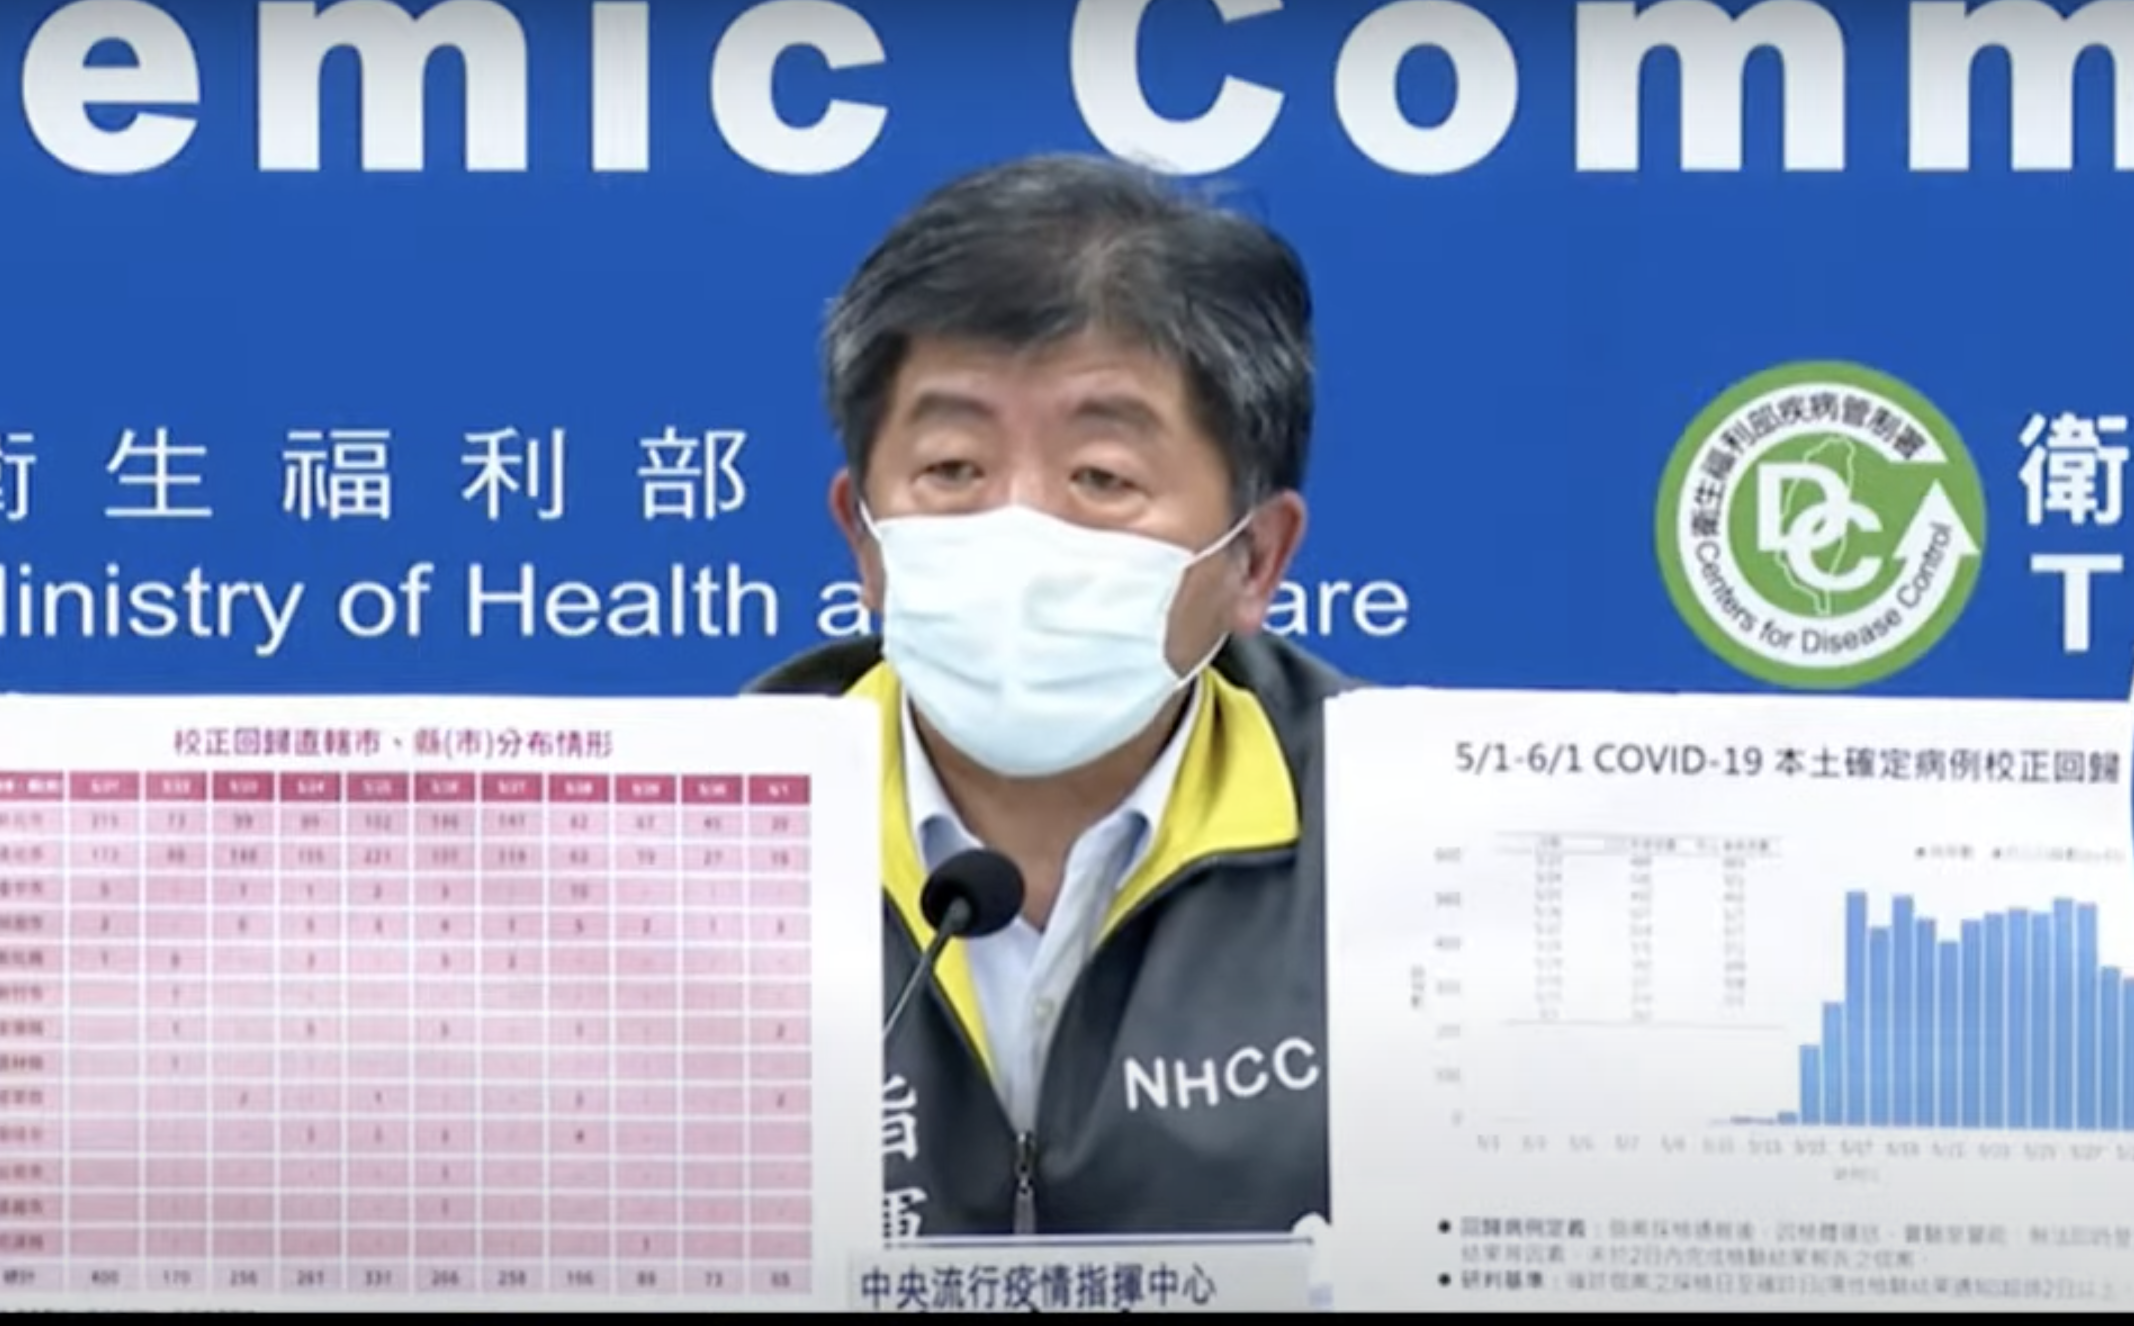 Ngày 1/6 Đài Loan tăng thêm 262 ca lây nhiễm COVID-19 nội địa, 5 ca lây nhiễm từ nước ngoài, 65 ca lây nhiễm bổ sung, 13 ca tử vong